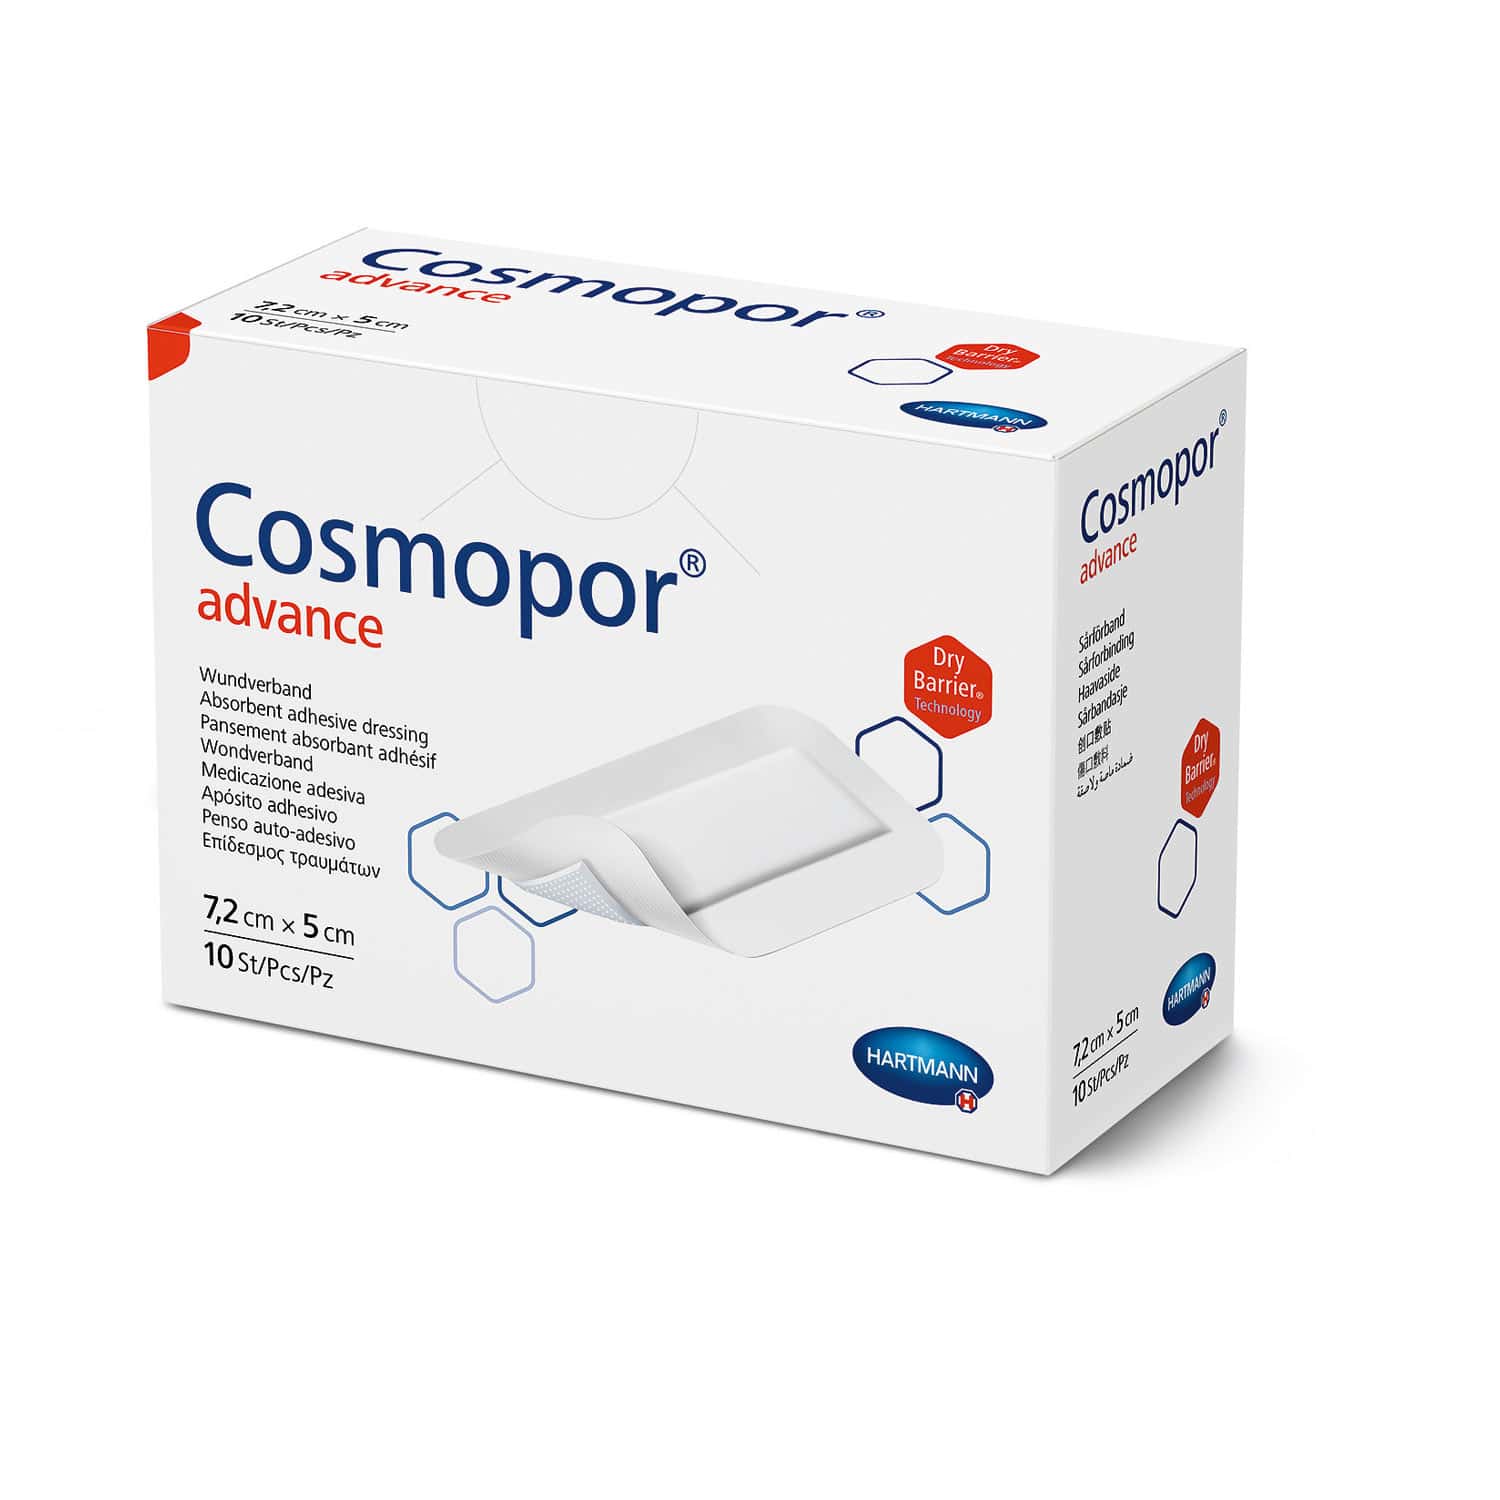 Cosmopor® Advance For Postoperative Wound Care